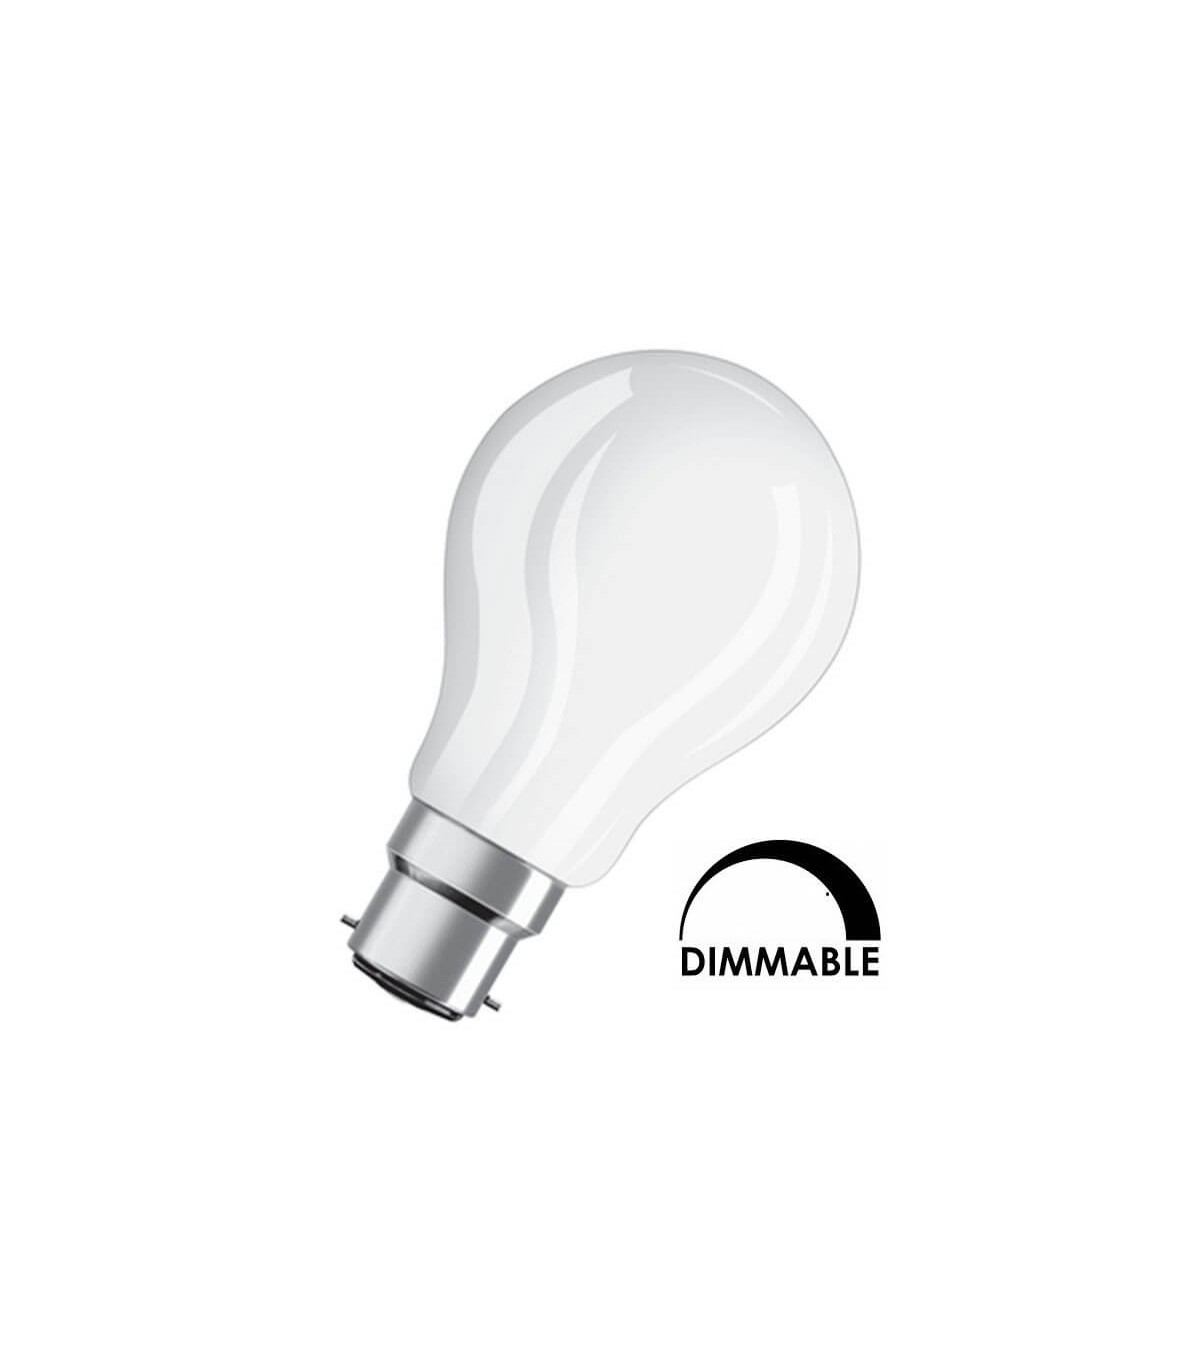 Ampoule LED E14 flamme à filament variable 5 W = 470 lumens blanc froid  OSRAM, 1330370, Ampoule, luminaire et eclairage